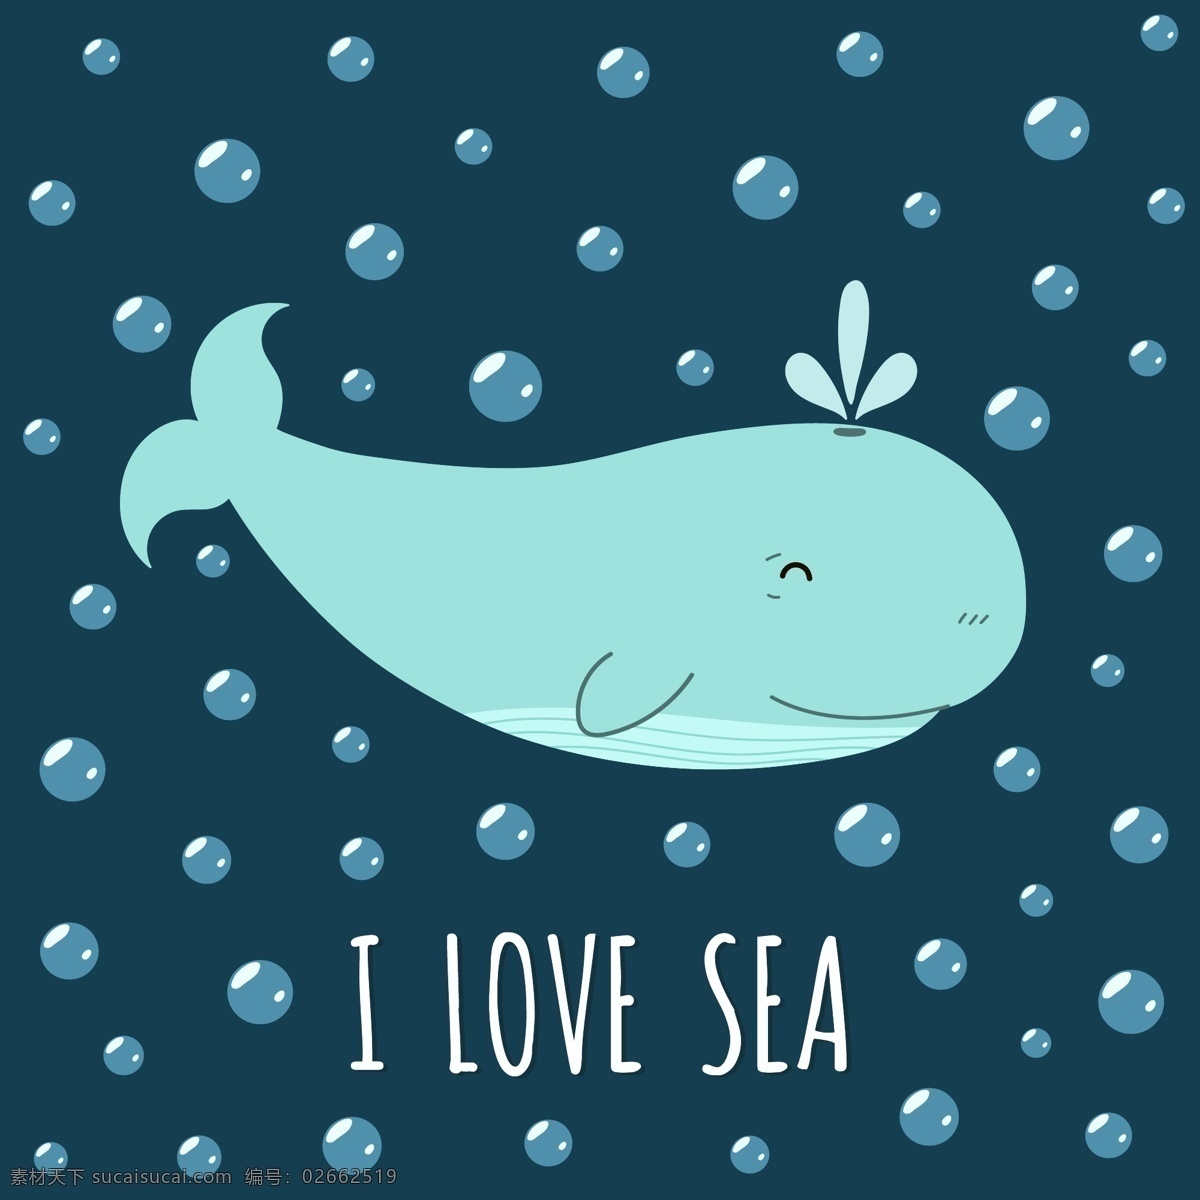 小 清新 海洋 主题 插画 可爱 卡通 小清新 海洋主题 海底世界 动物 植物 水草气泡 生物 鱼群 动漫动画